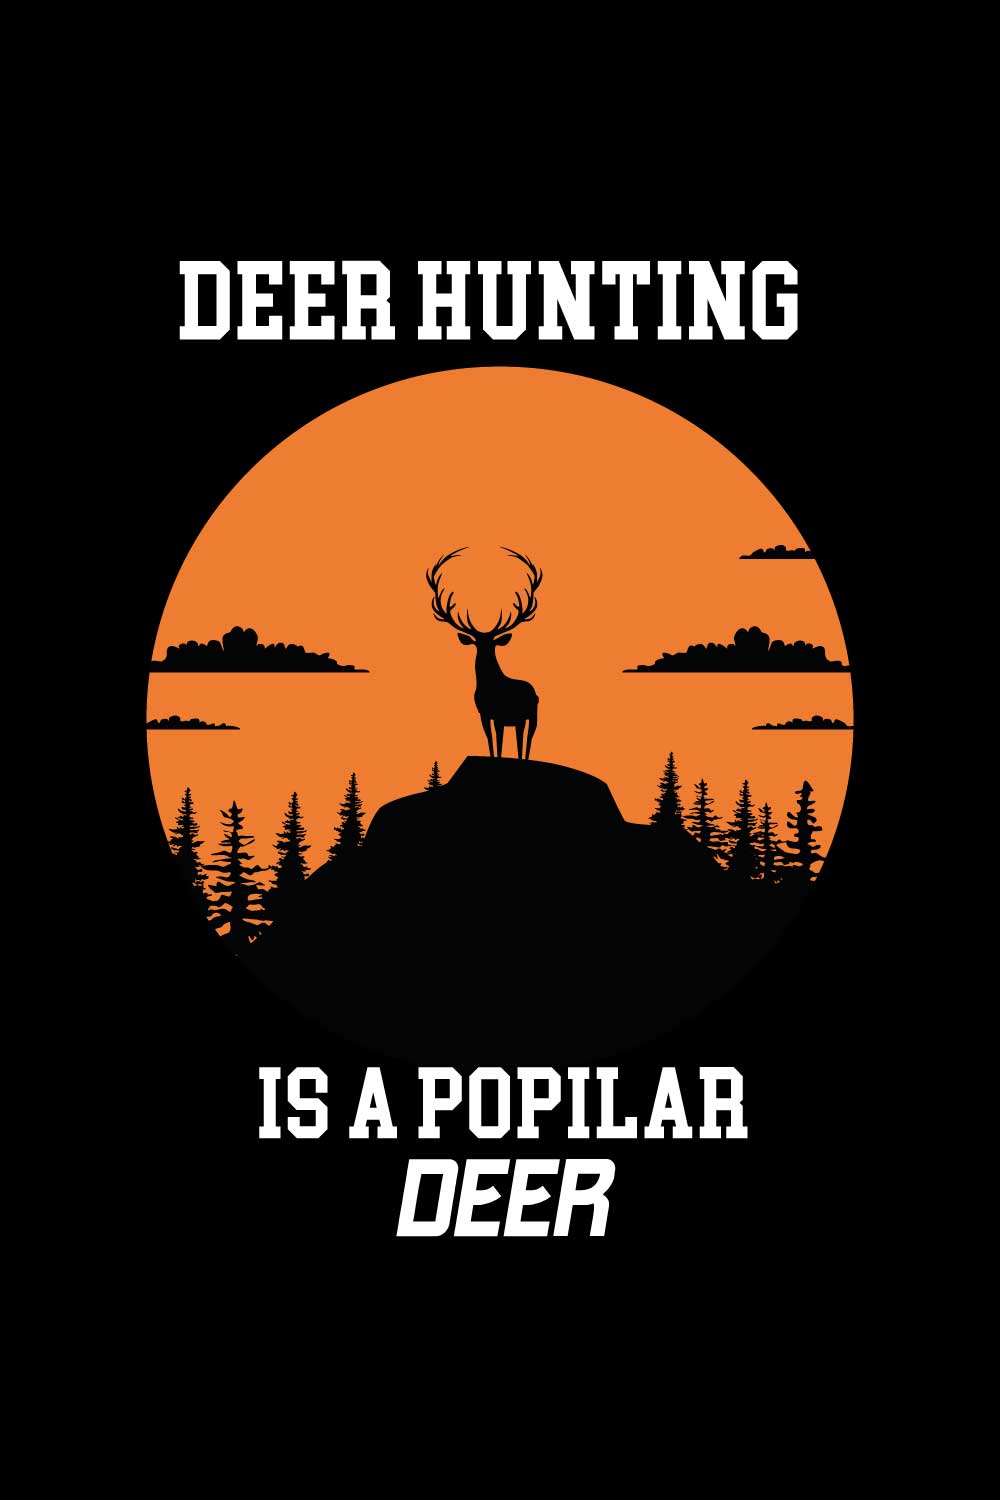 Deer Hunting Is A Popular Deer pinterest image.